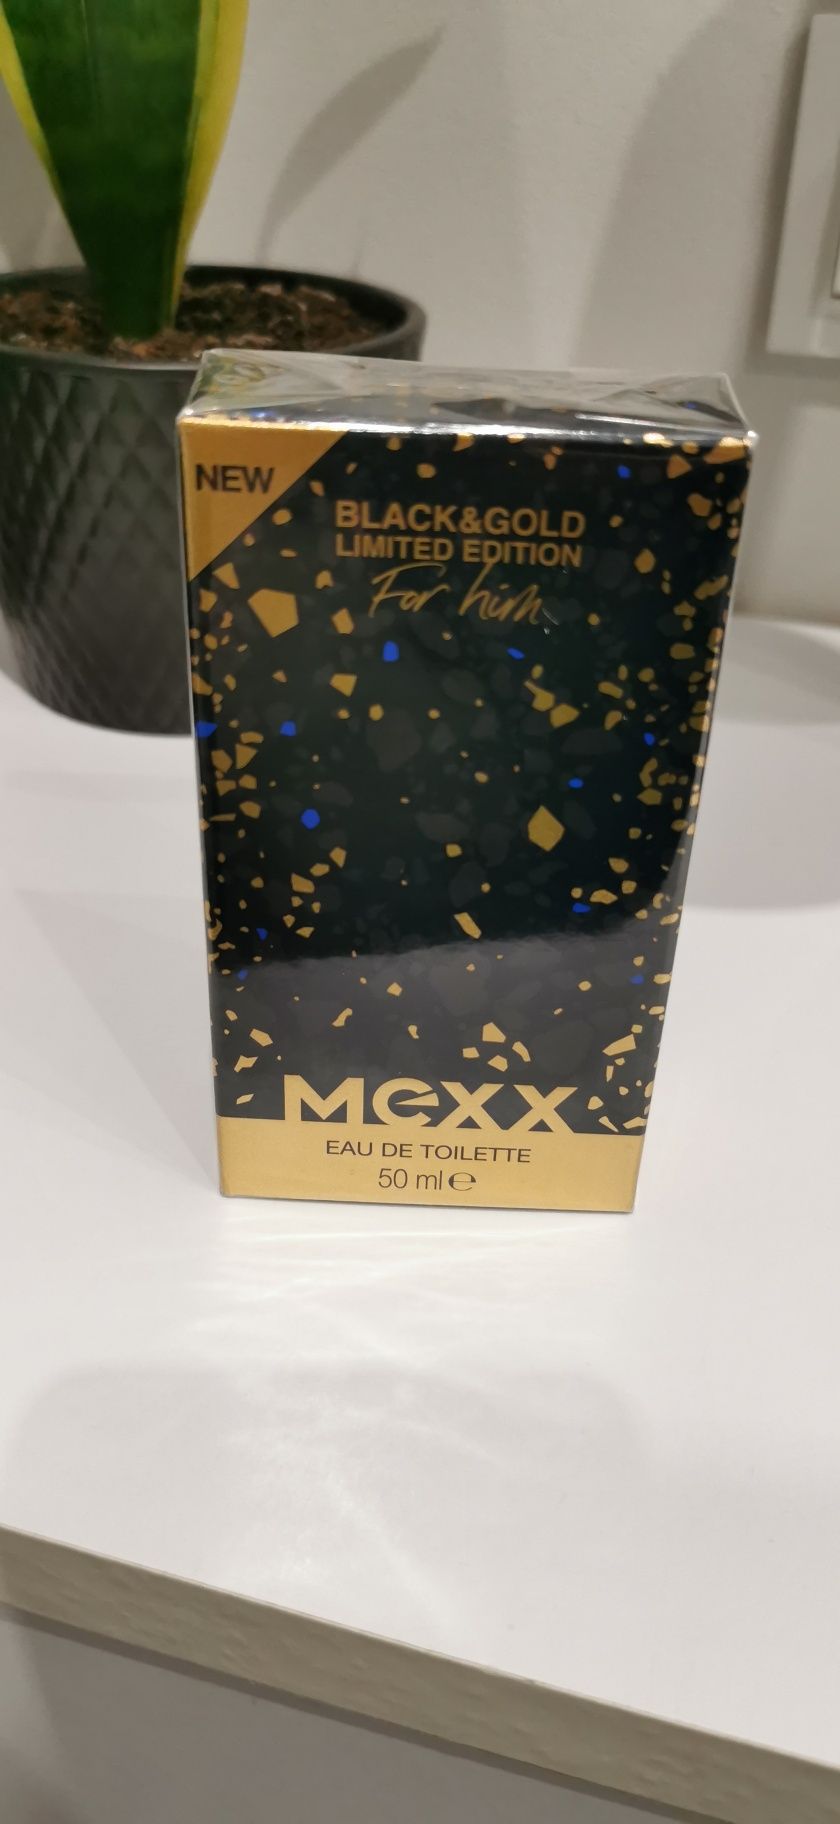 Sprzedam wodę perfumowaną MEXX BLACK&GOLD 50ml